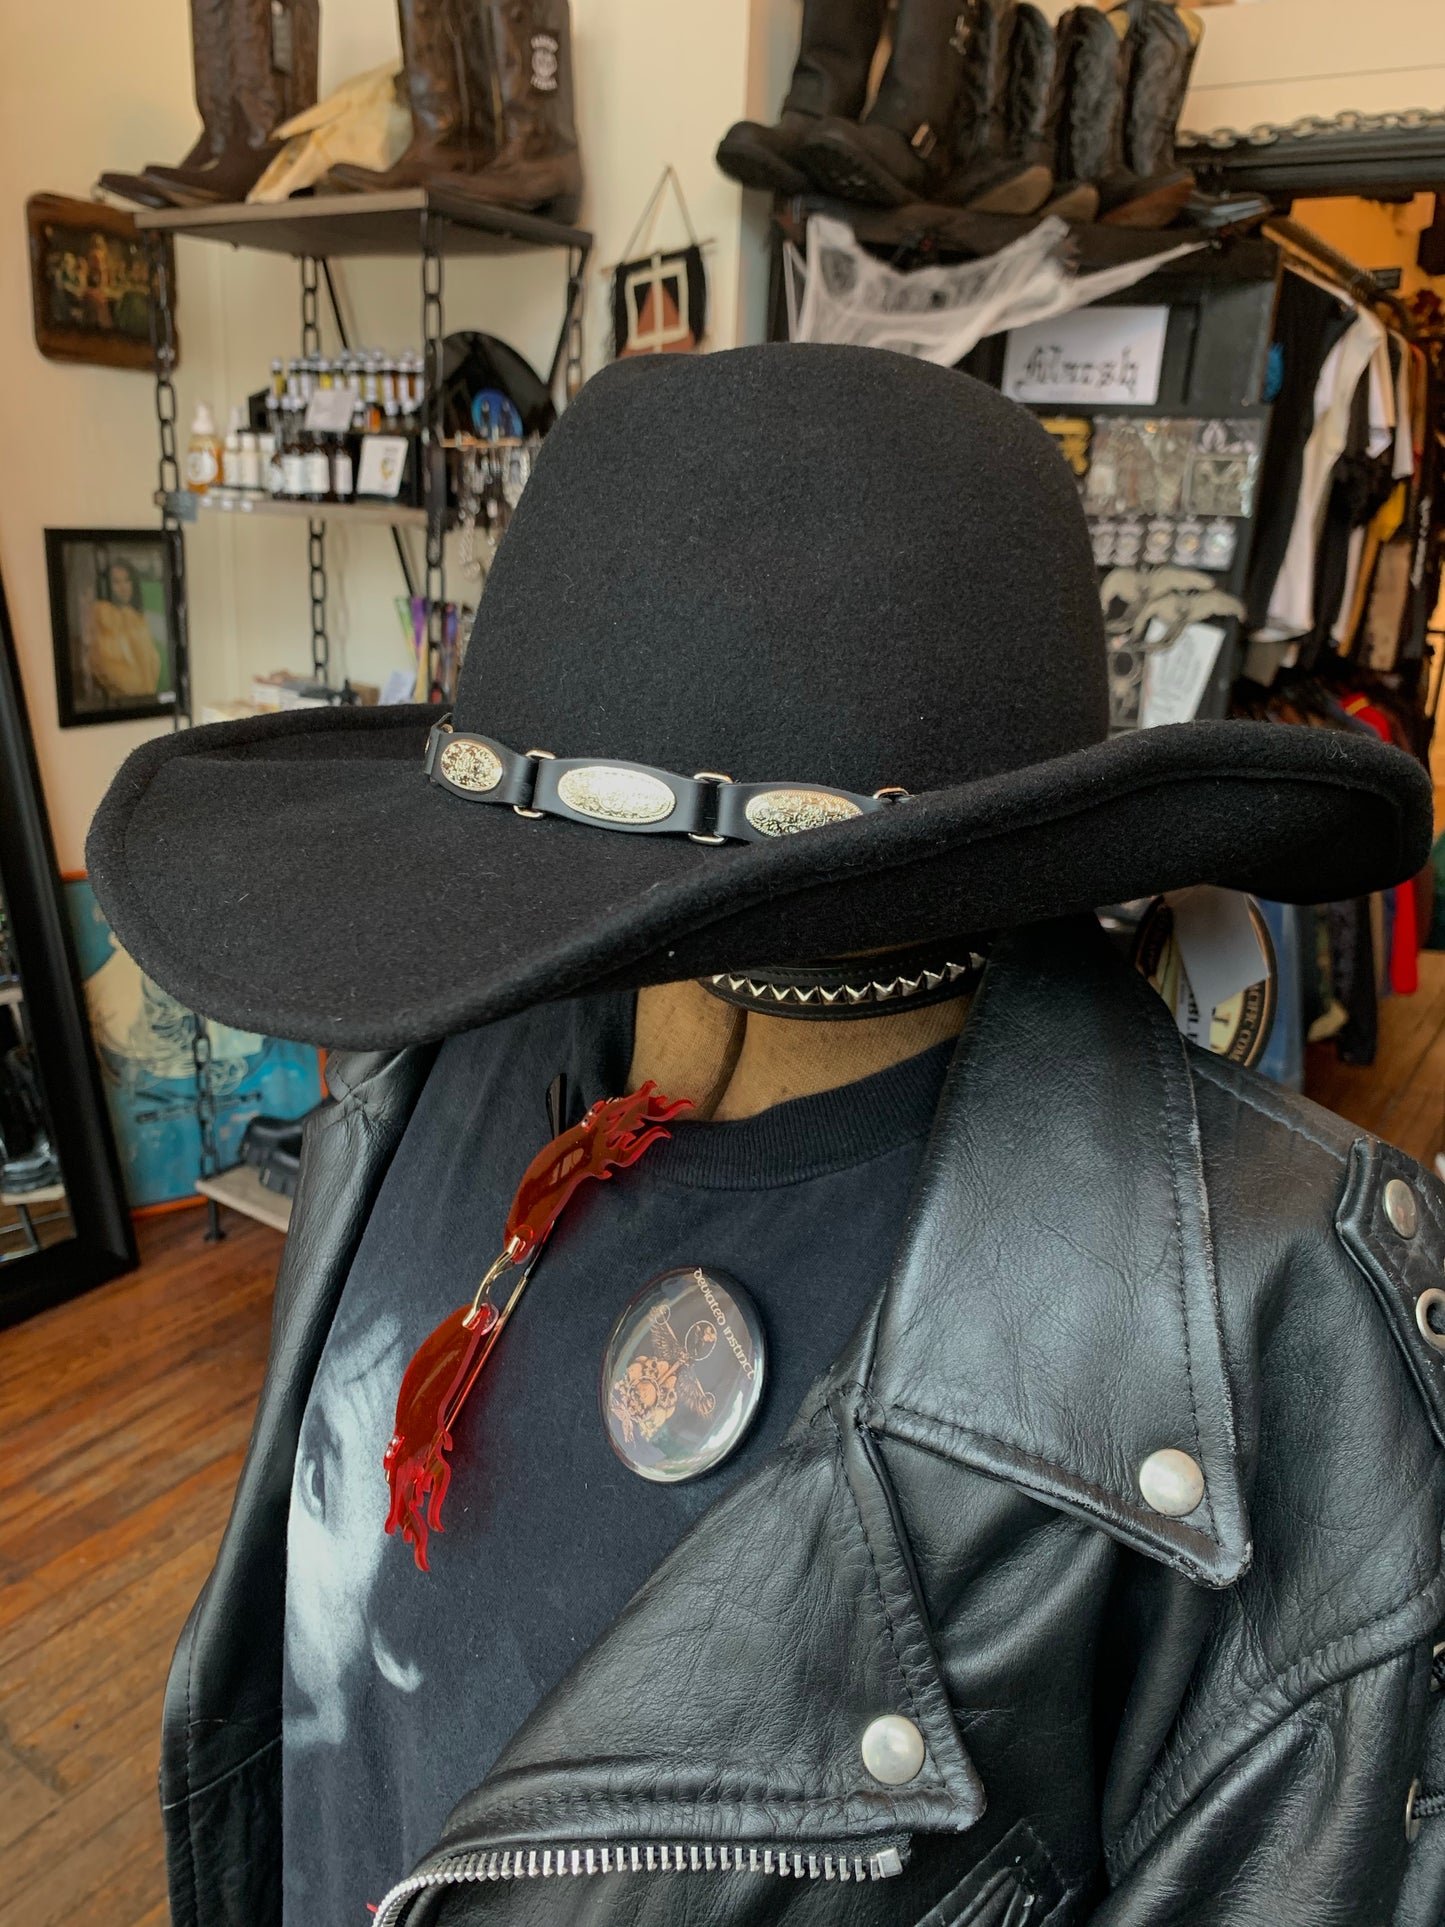 NWT Scala Concho Wool Cowboy Hat